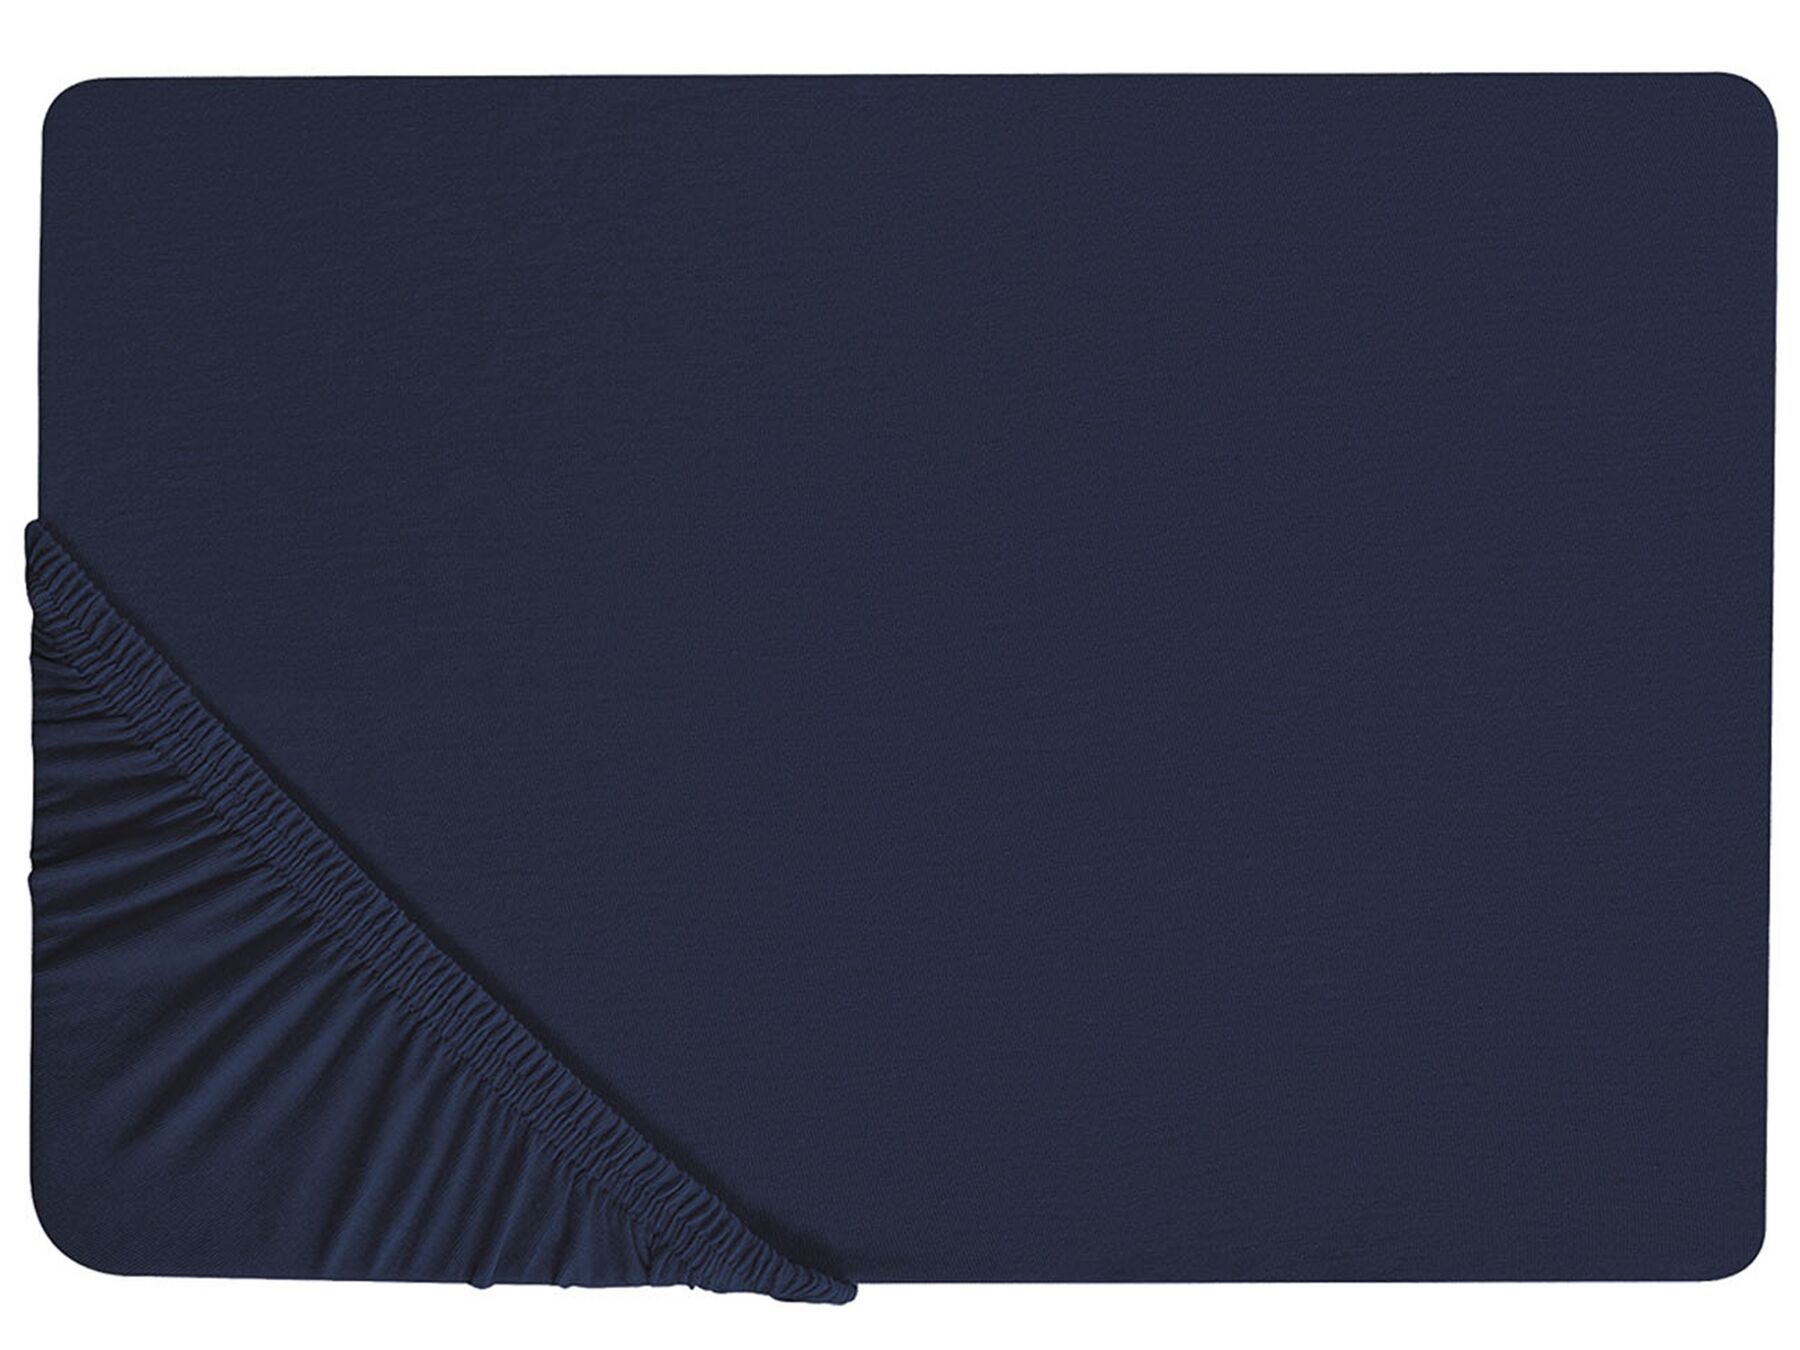 Hoeslaken katoen donkerblauw 200 x 200 cm HOFUF_816030